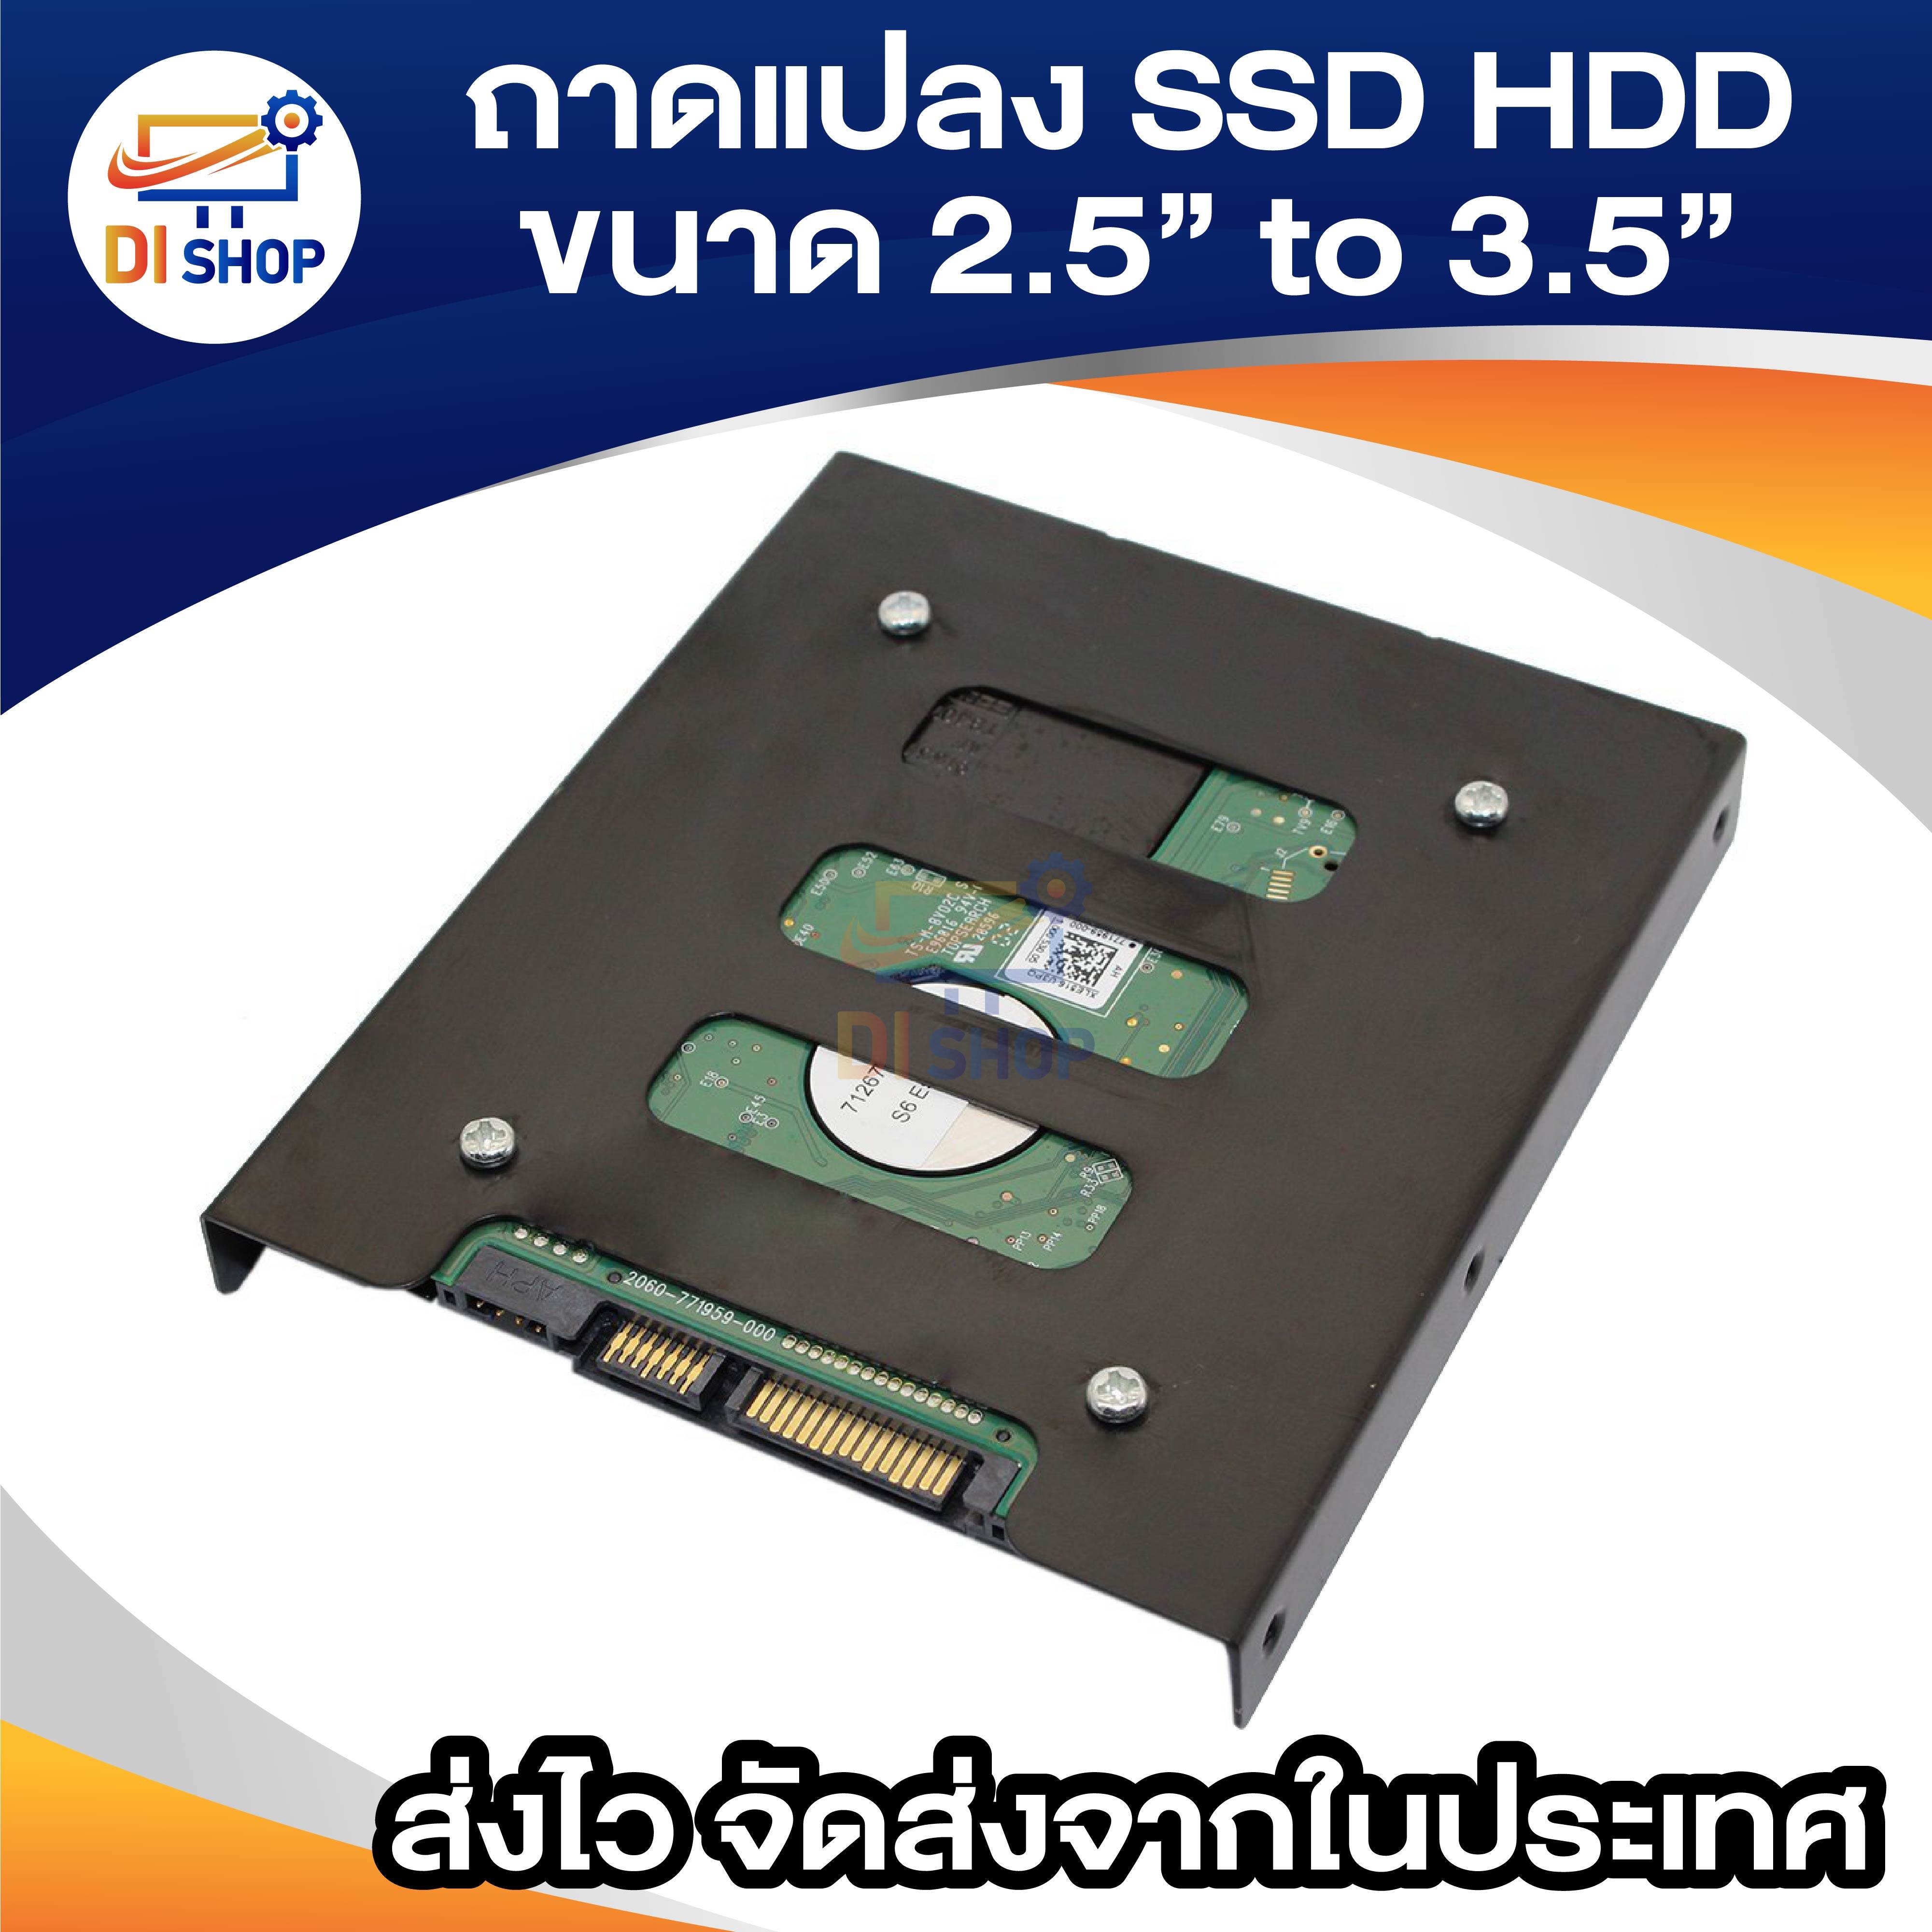 ข้อมูลประกอบของ Di shop ถาดแปลงฮาร์ดดิสก์ / SSD ขนาด 2.5 to 3.5